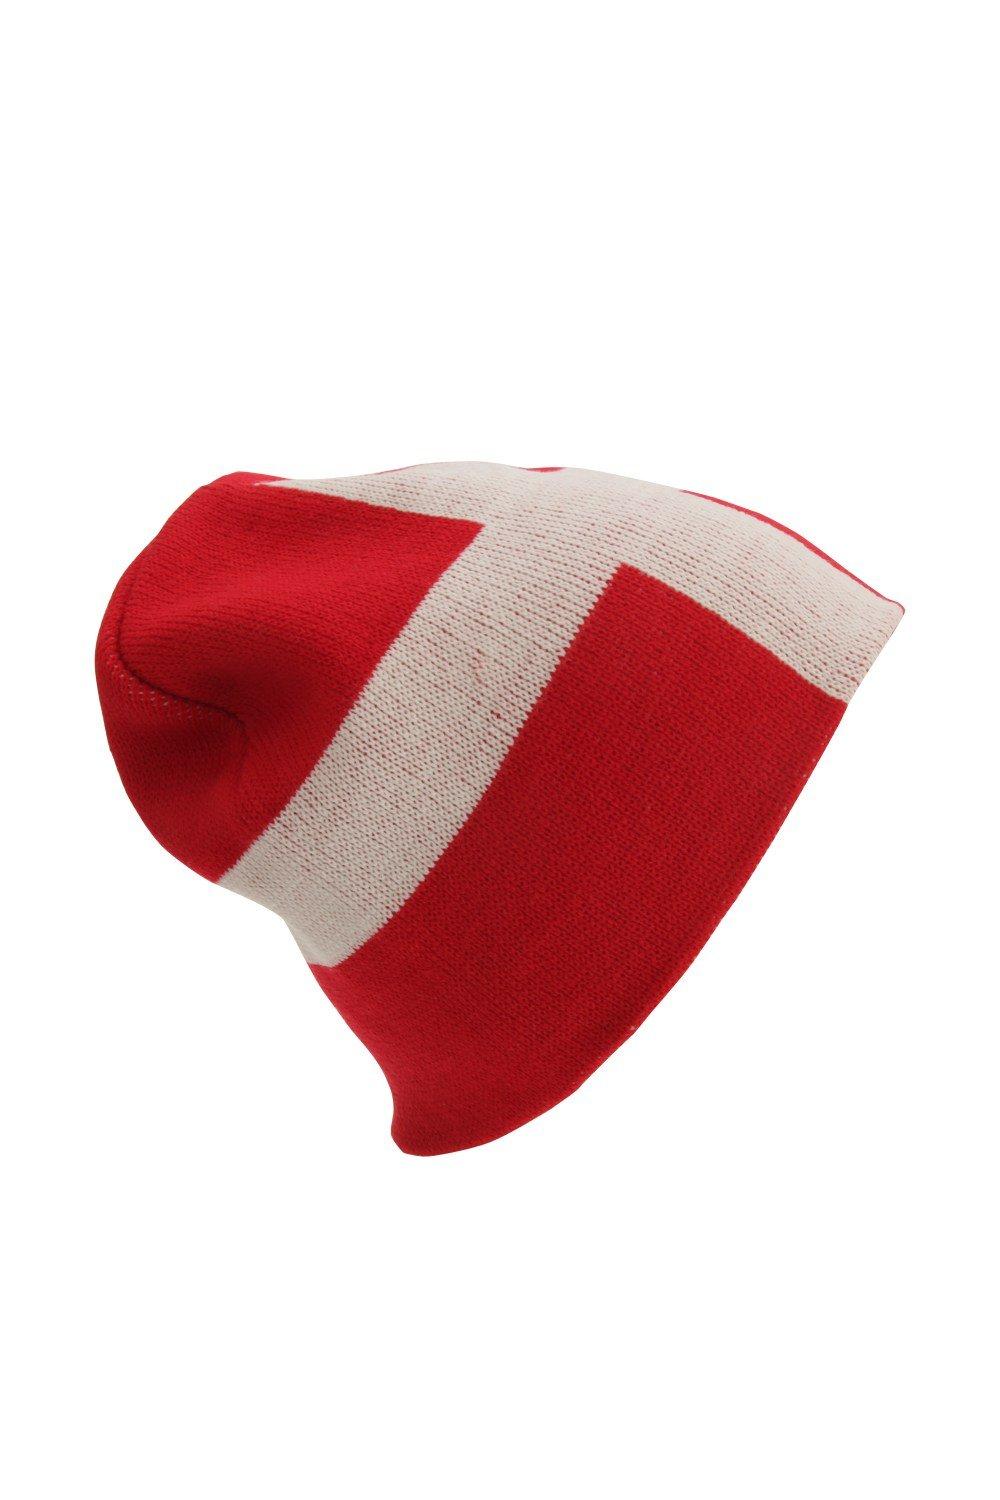 Зимняя шапка с флагом Дании Universal Textiles, красный шапка бини 100%акрил размер свободный серый